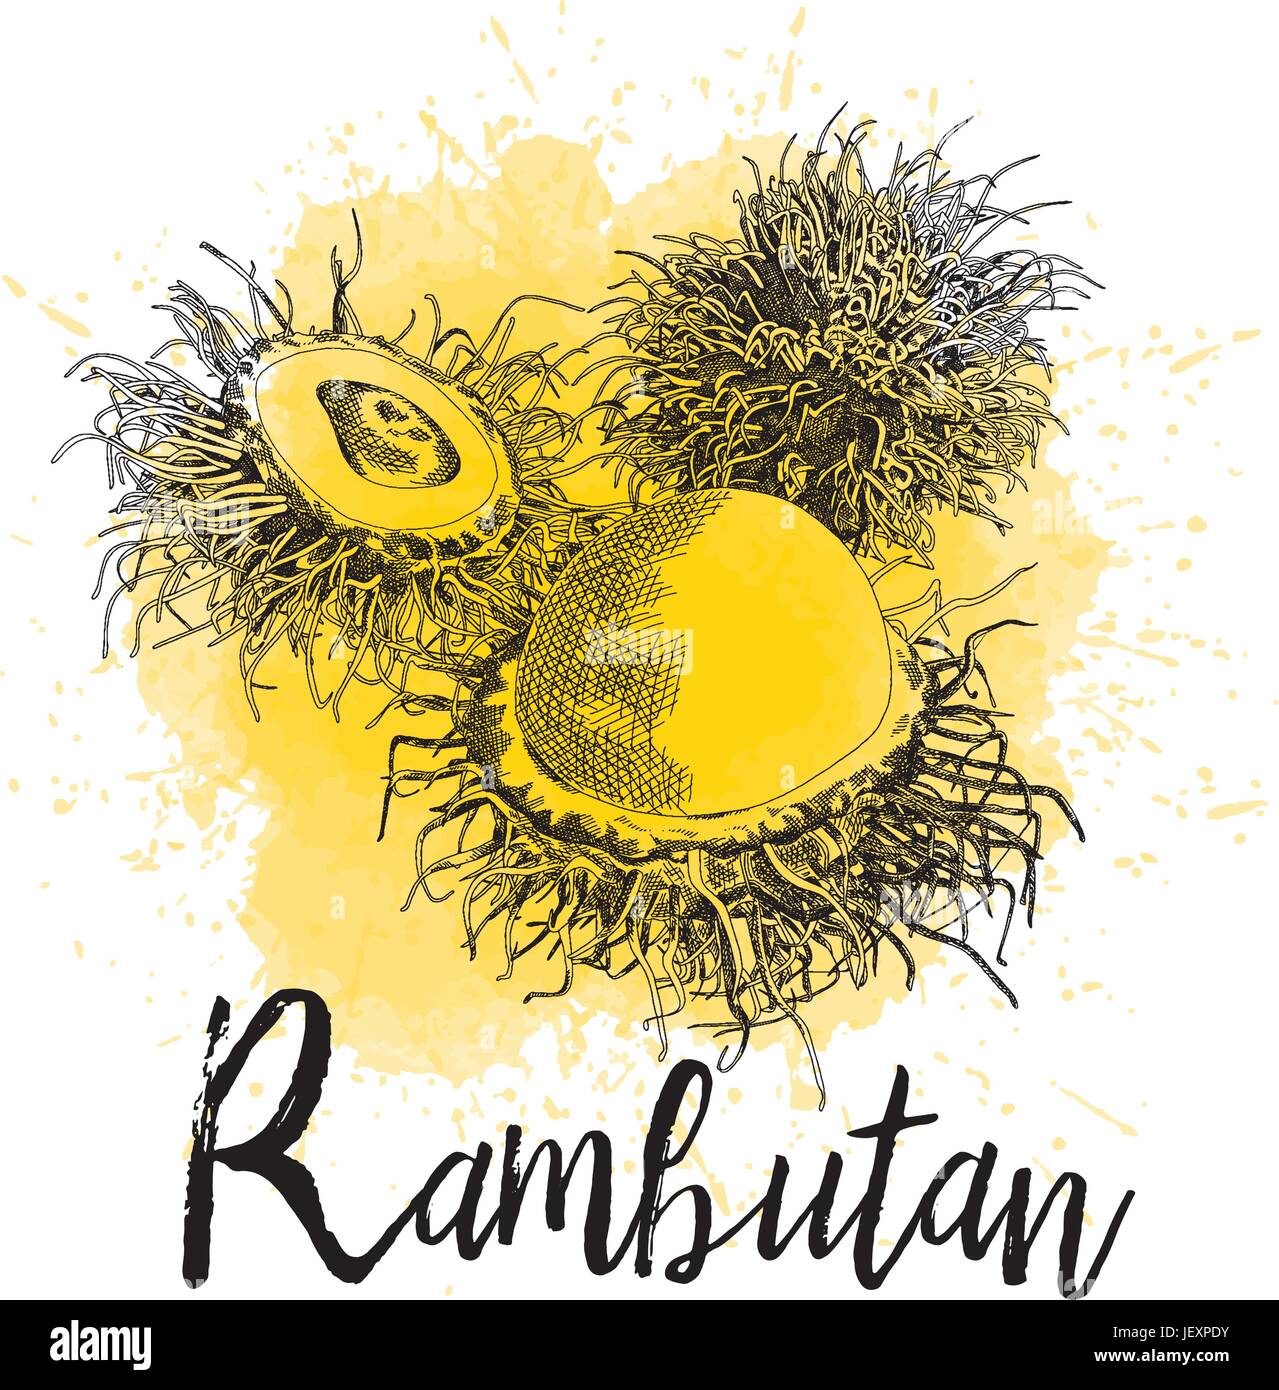 Illustrazione Vettoriale di rambutan in disegnati a mano la grafica. Il frutto è rappresentato su un acquerello giallo dello sfondo. Succo di frutta Packaging Design Illustrazione Vettoriale